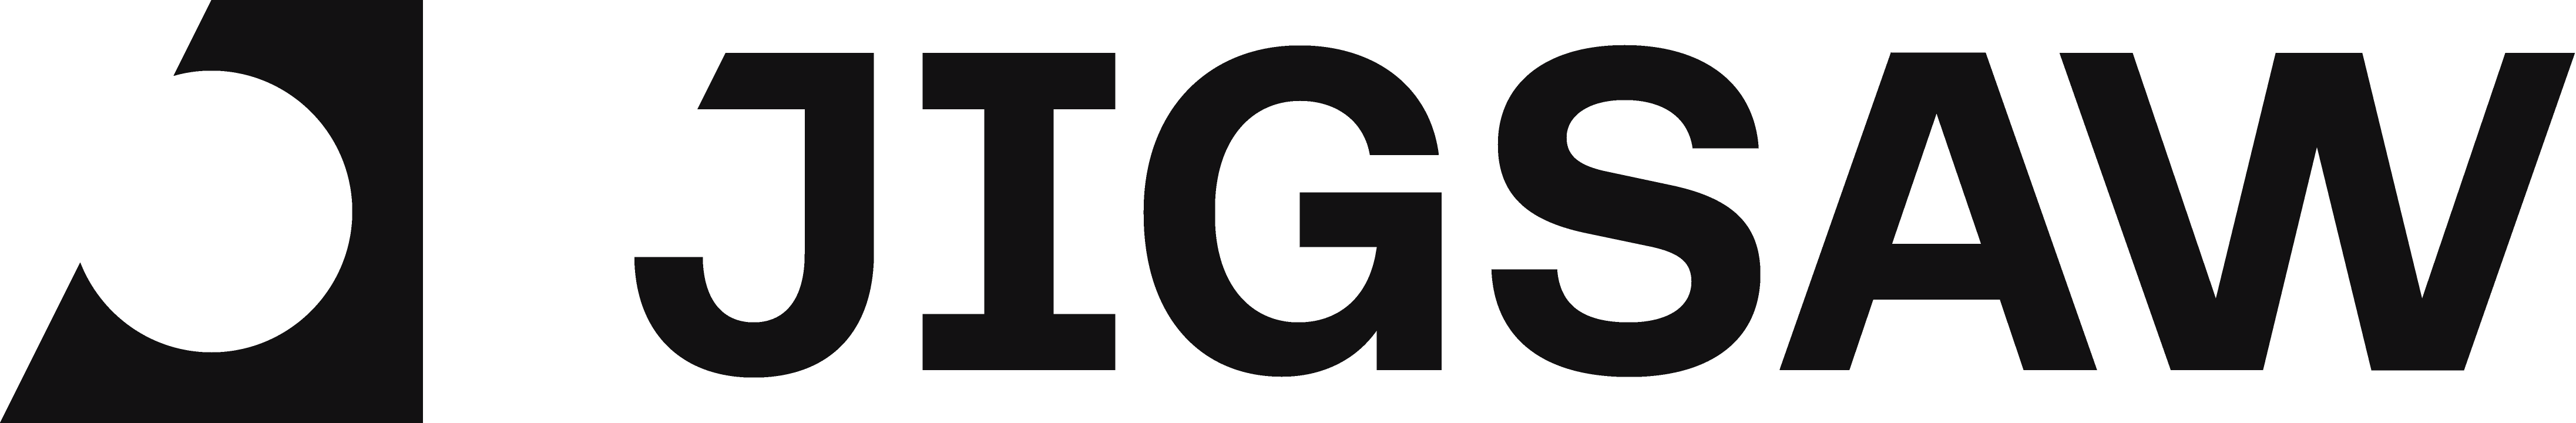 Google Jigsaw Logo